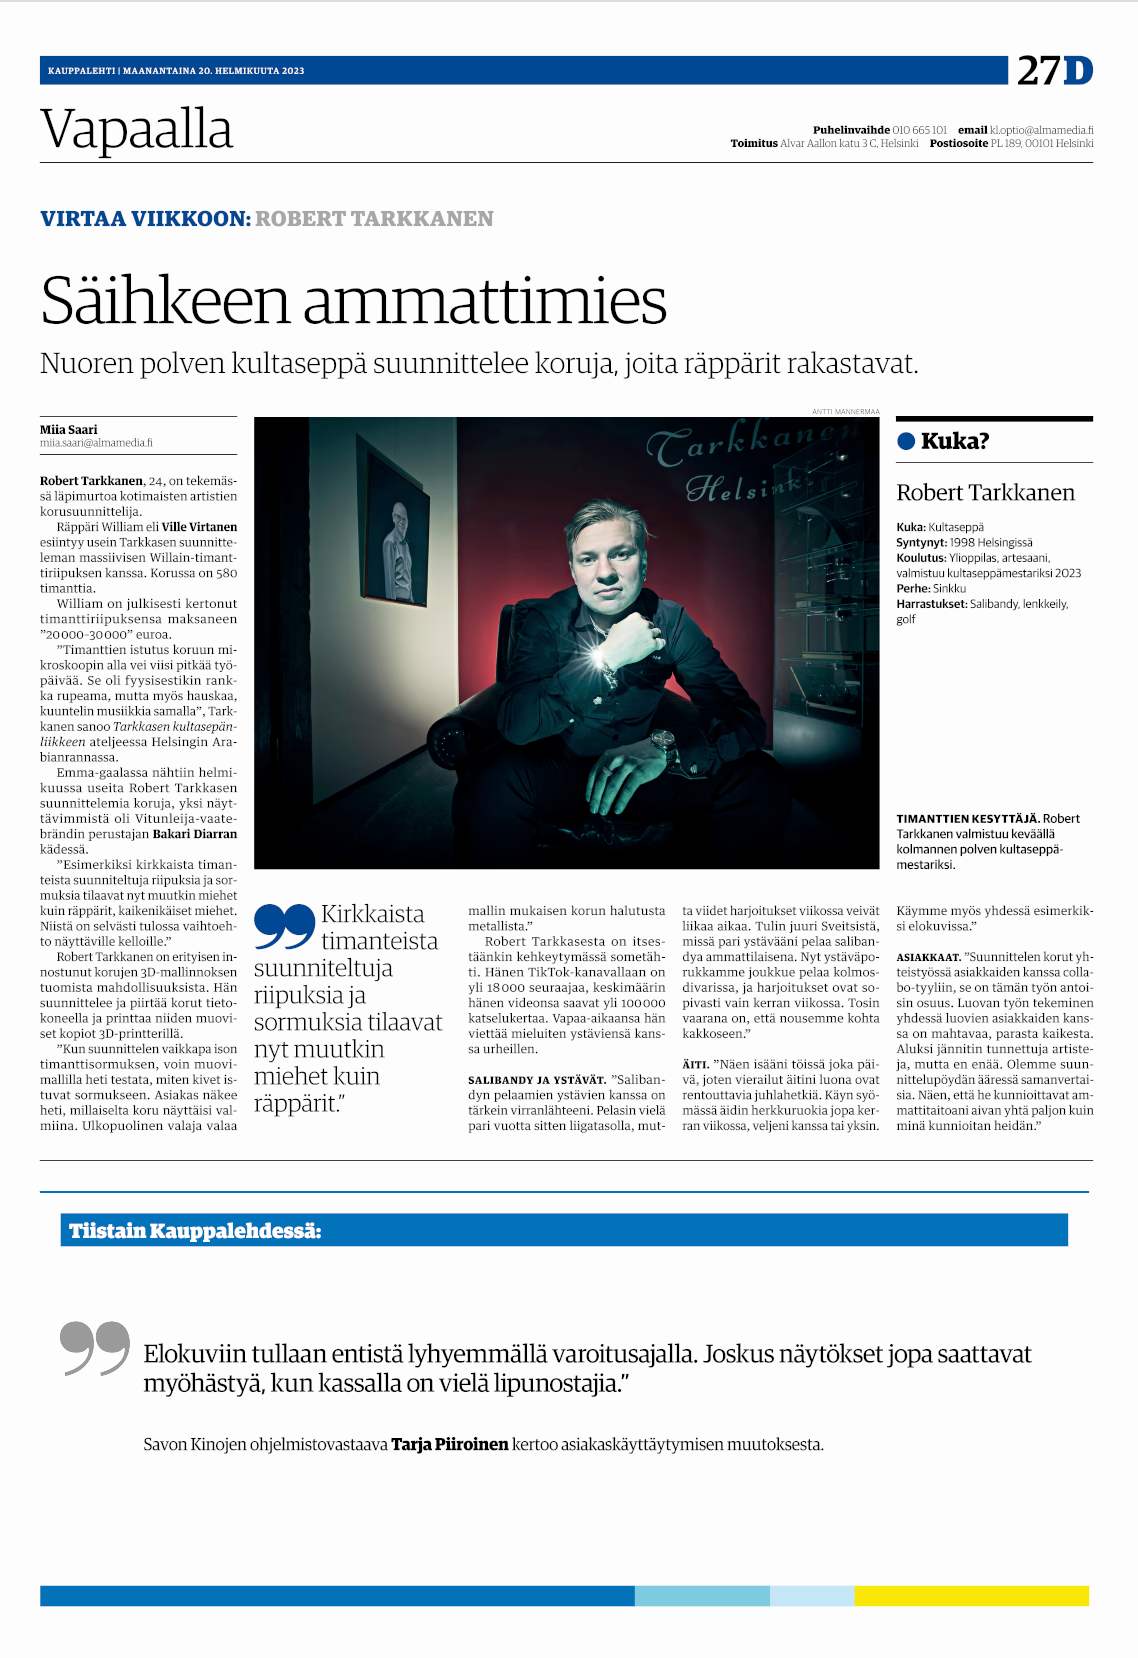 Robert Tarkkanen Kauppalehdessä, toimittaja Miia Saari, kuva Antti Mannermaa